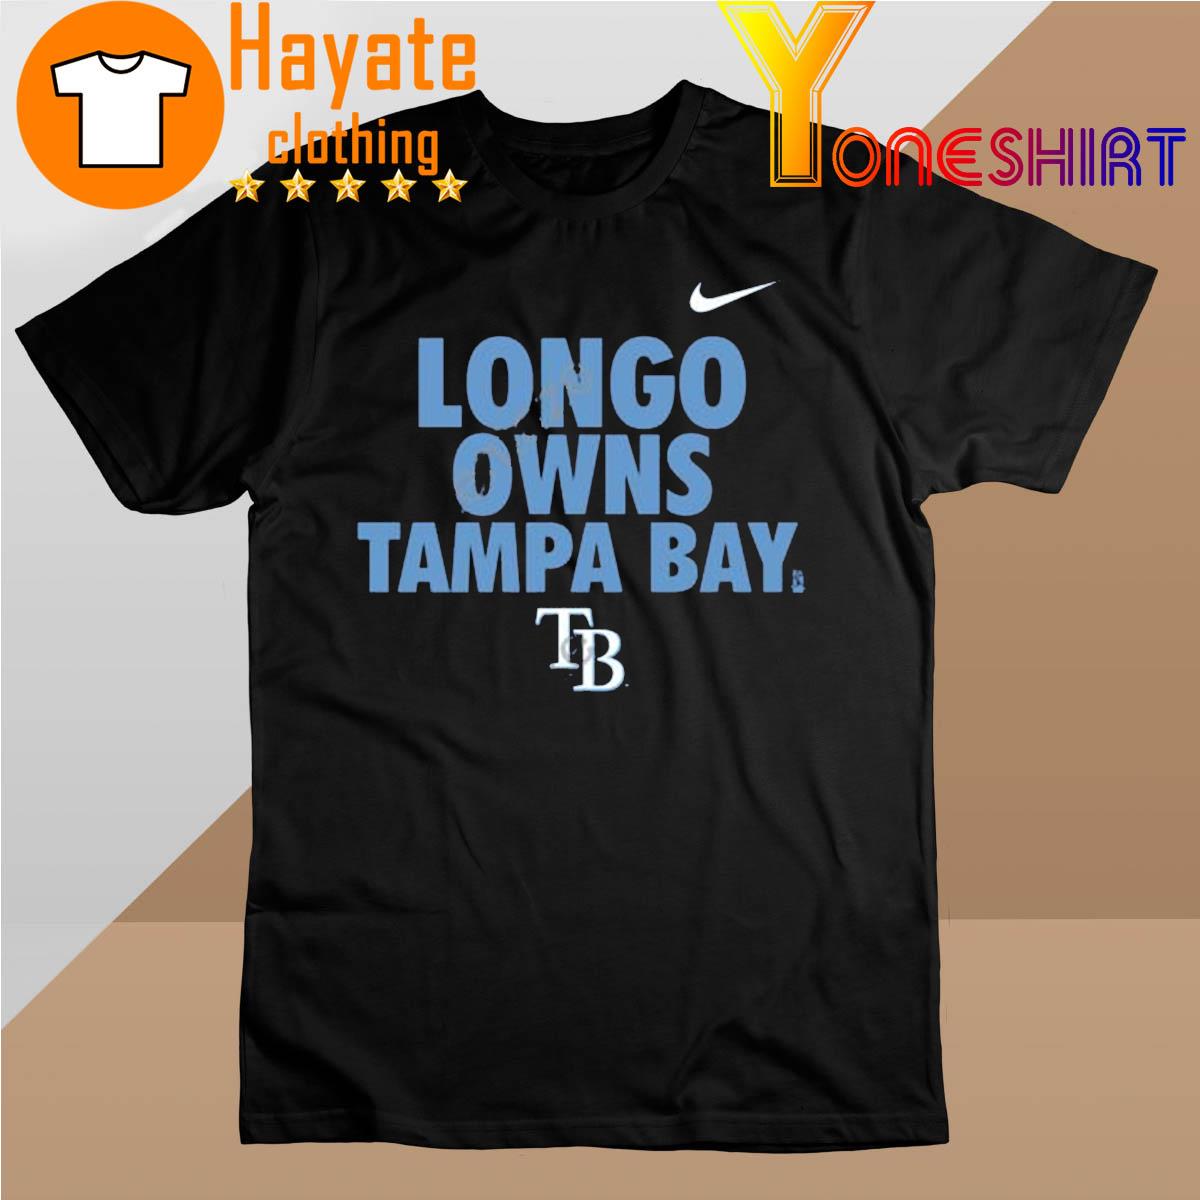 Tampa Bay Rays MLB Longo Owns Tampa Bay shirt